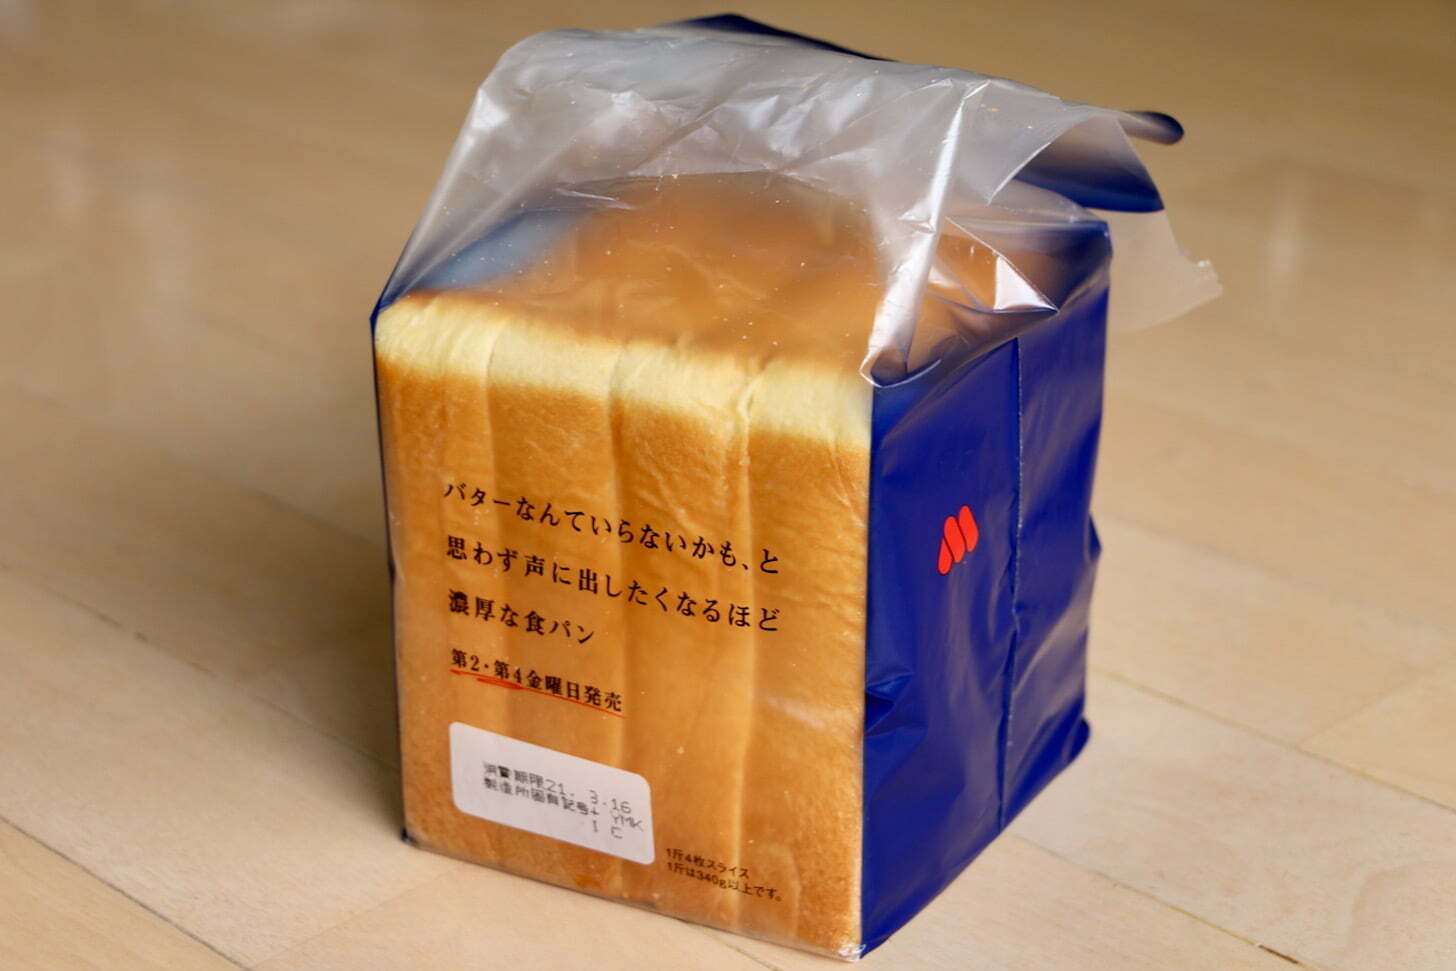 「バターなんていらないかも、と思わず声に出したくなるほど濃厚な食パン」